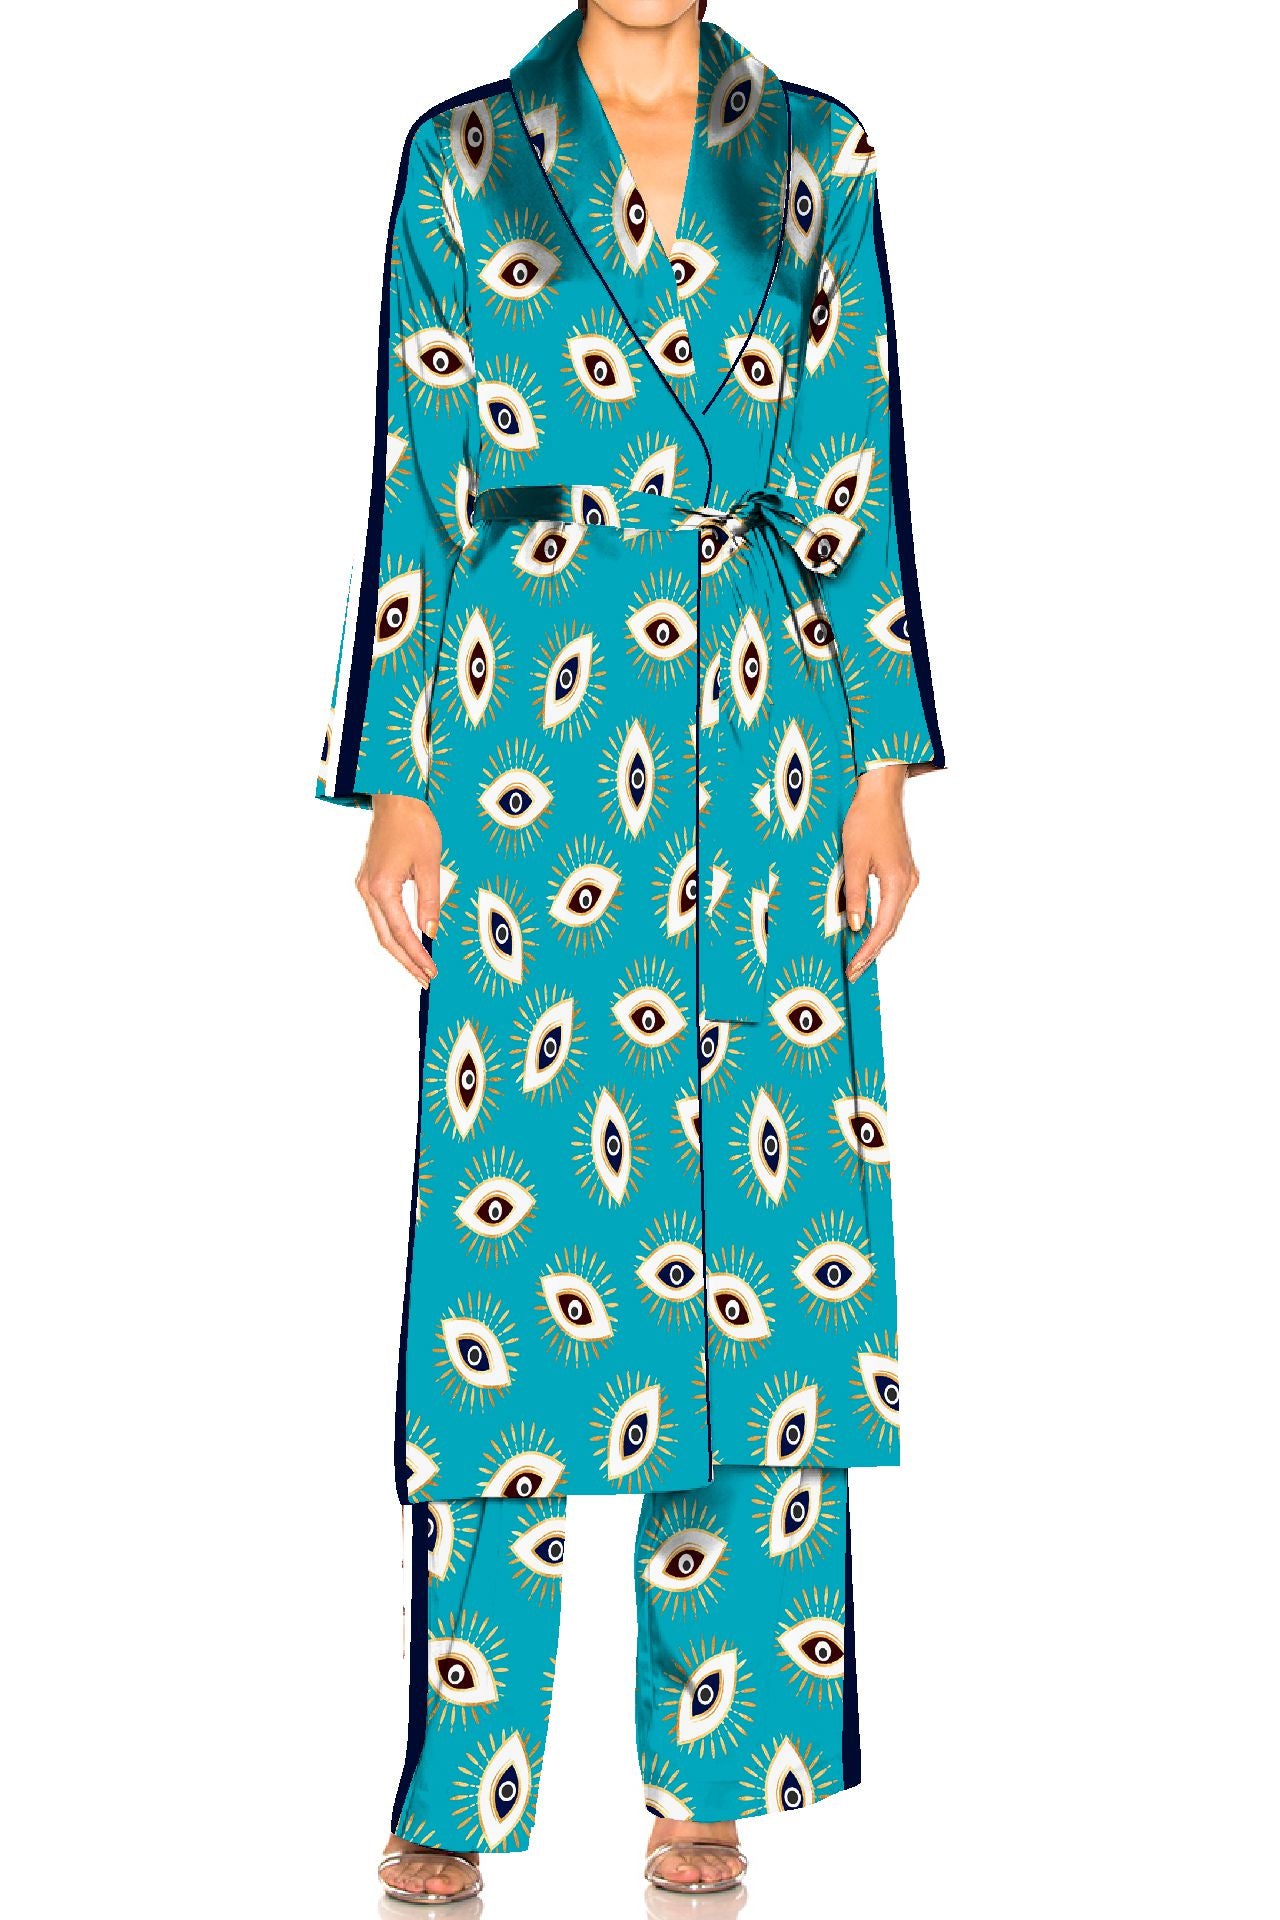 "robe and pajama set womens" "silk dress pajamas "Kyle X Shahida" "silk pajama robe set"